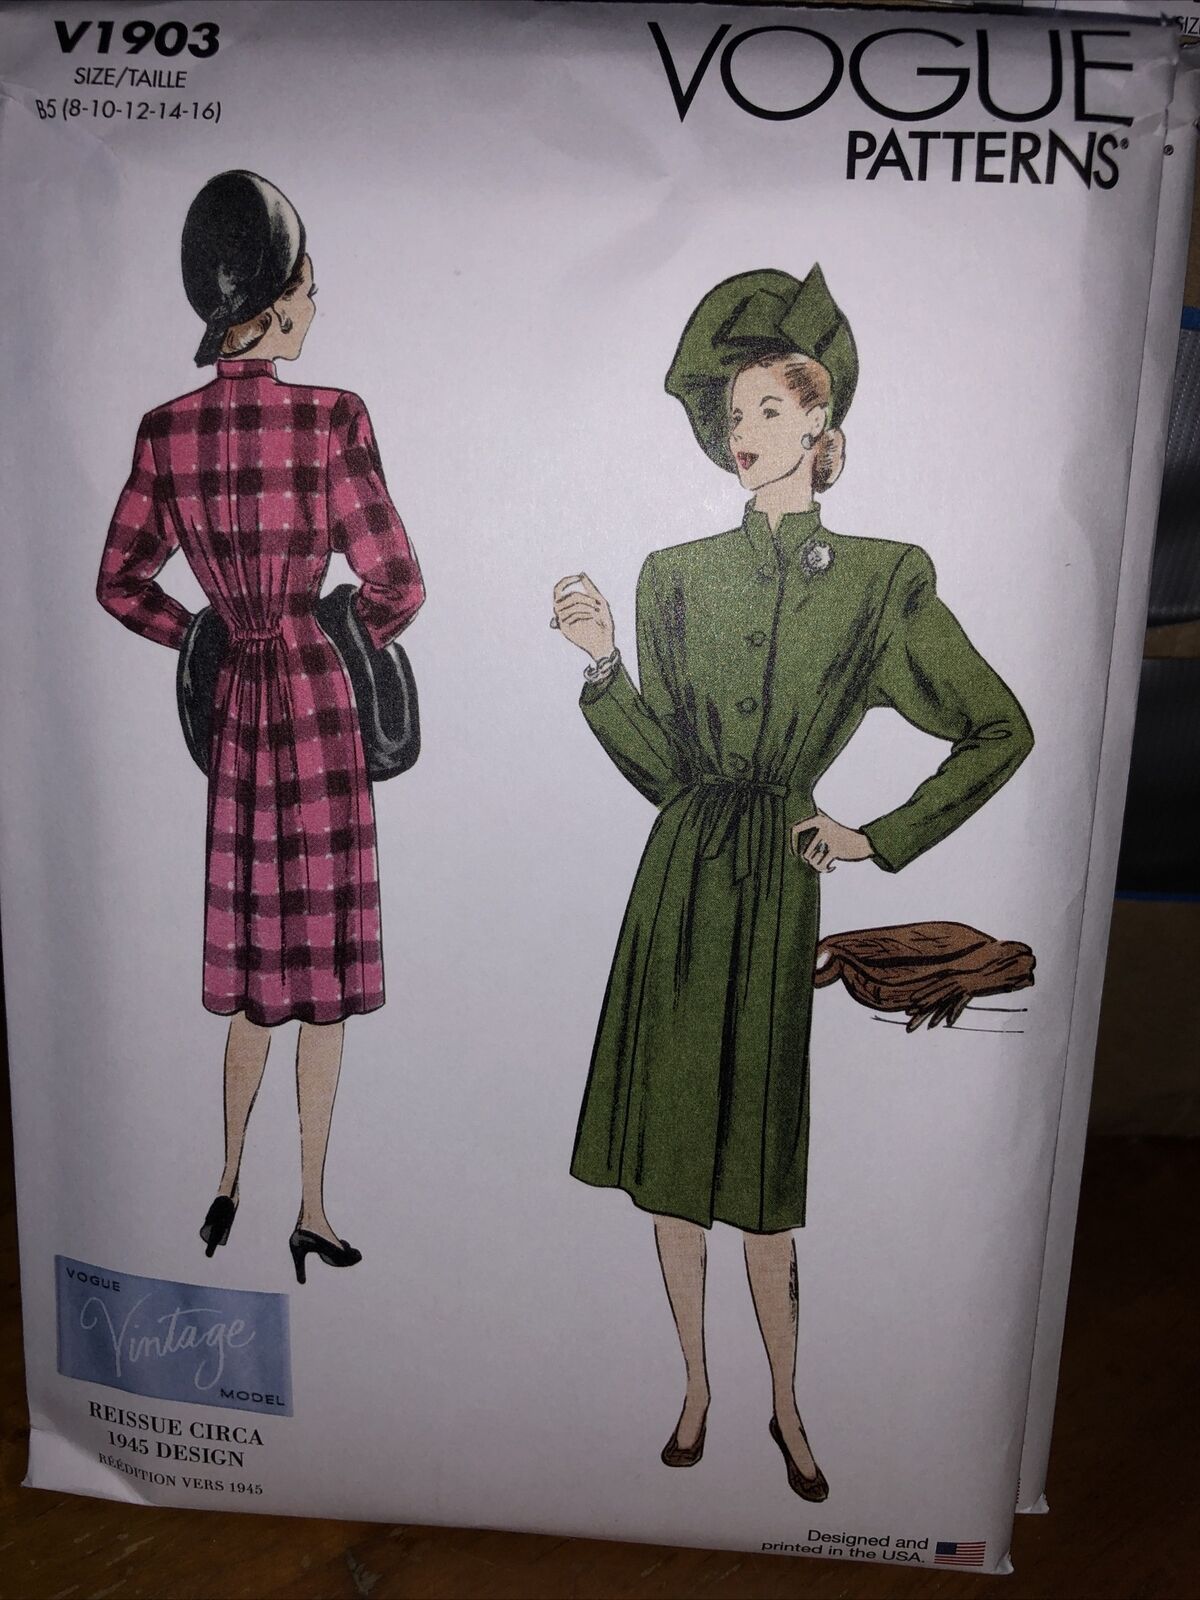 V1903 Sewing Pattern Vintage 1940s Coat B5 Sizes 8-16, 31664522133, Vogue 1903